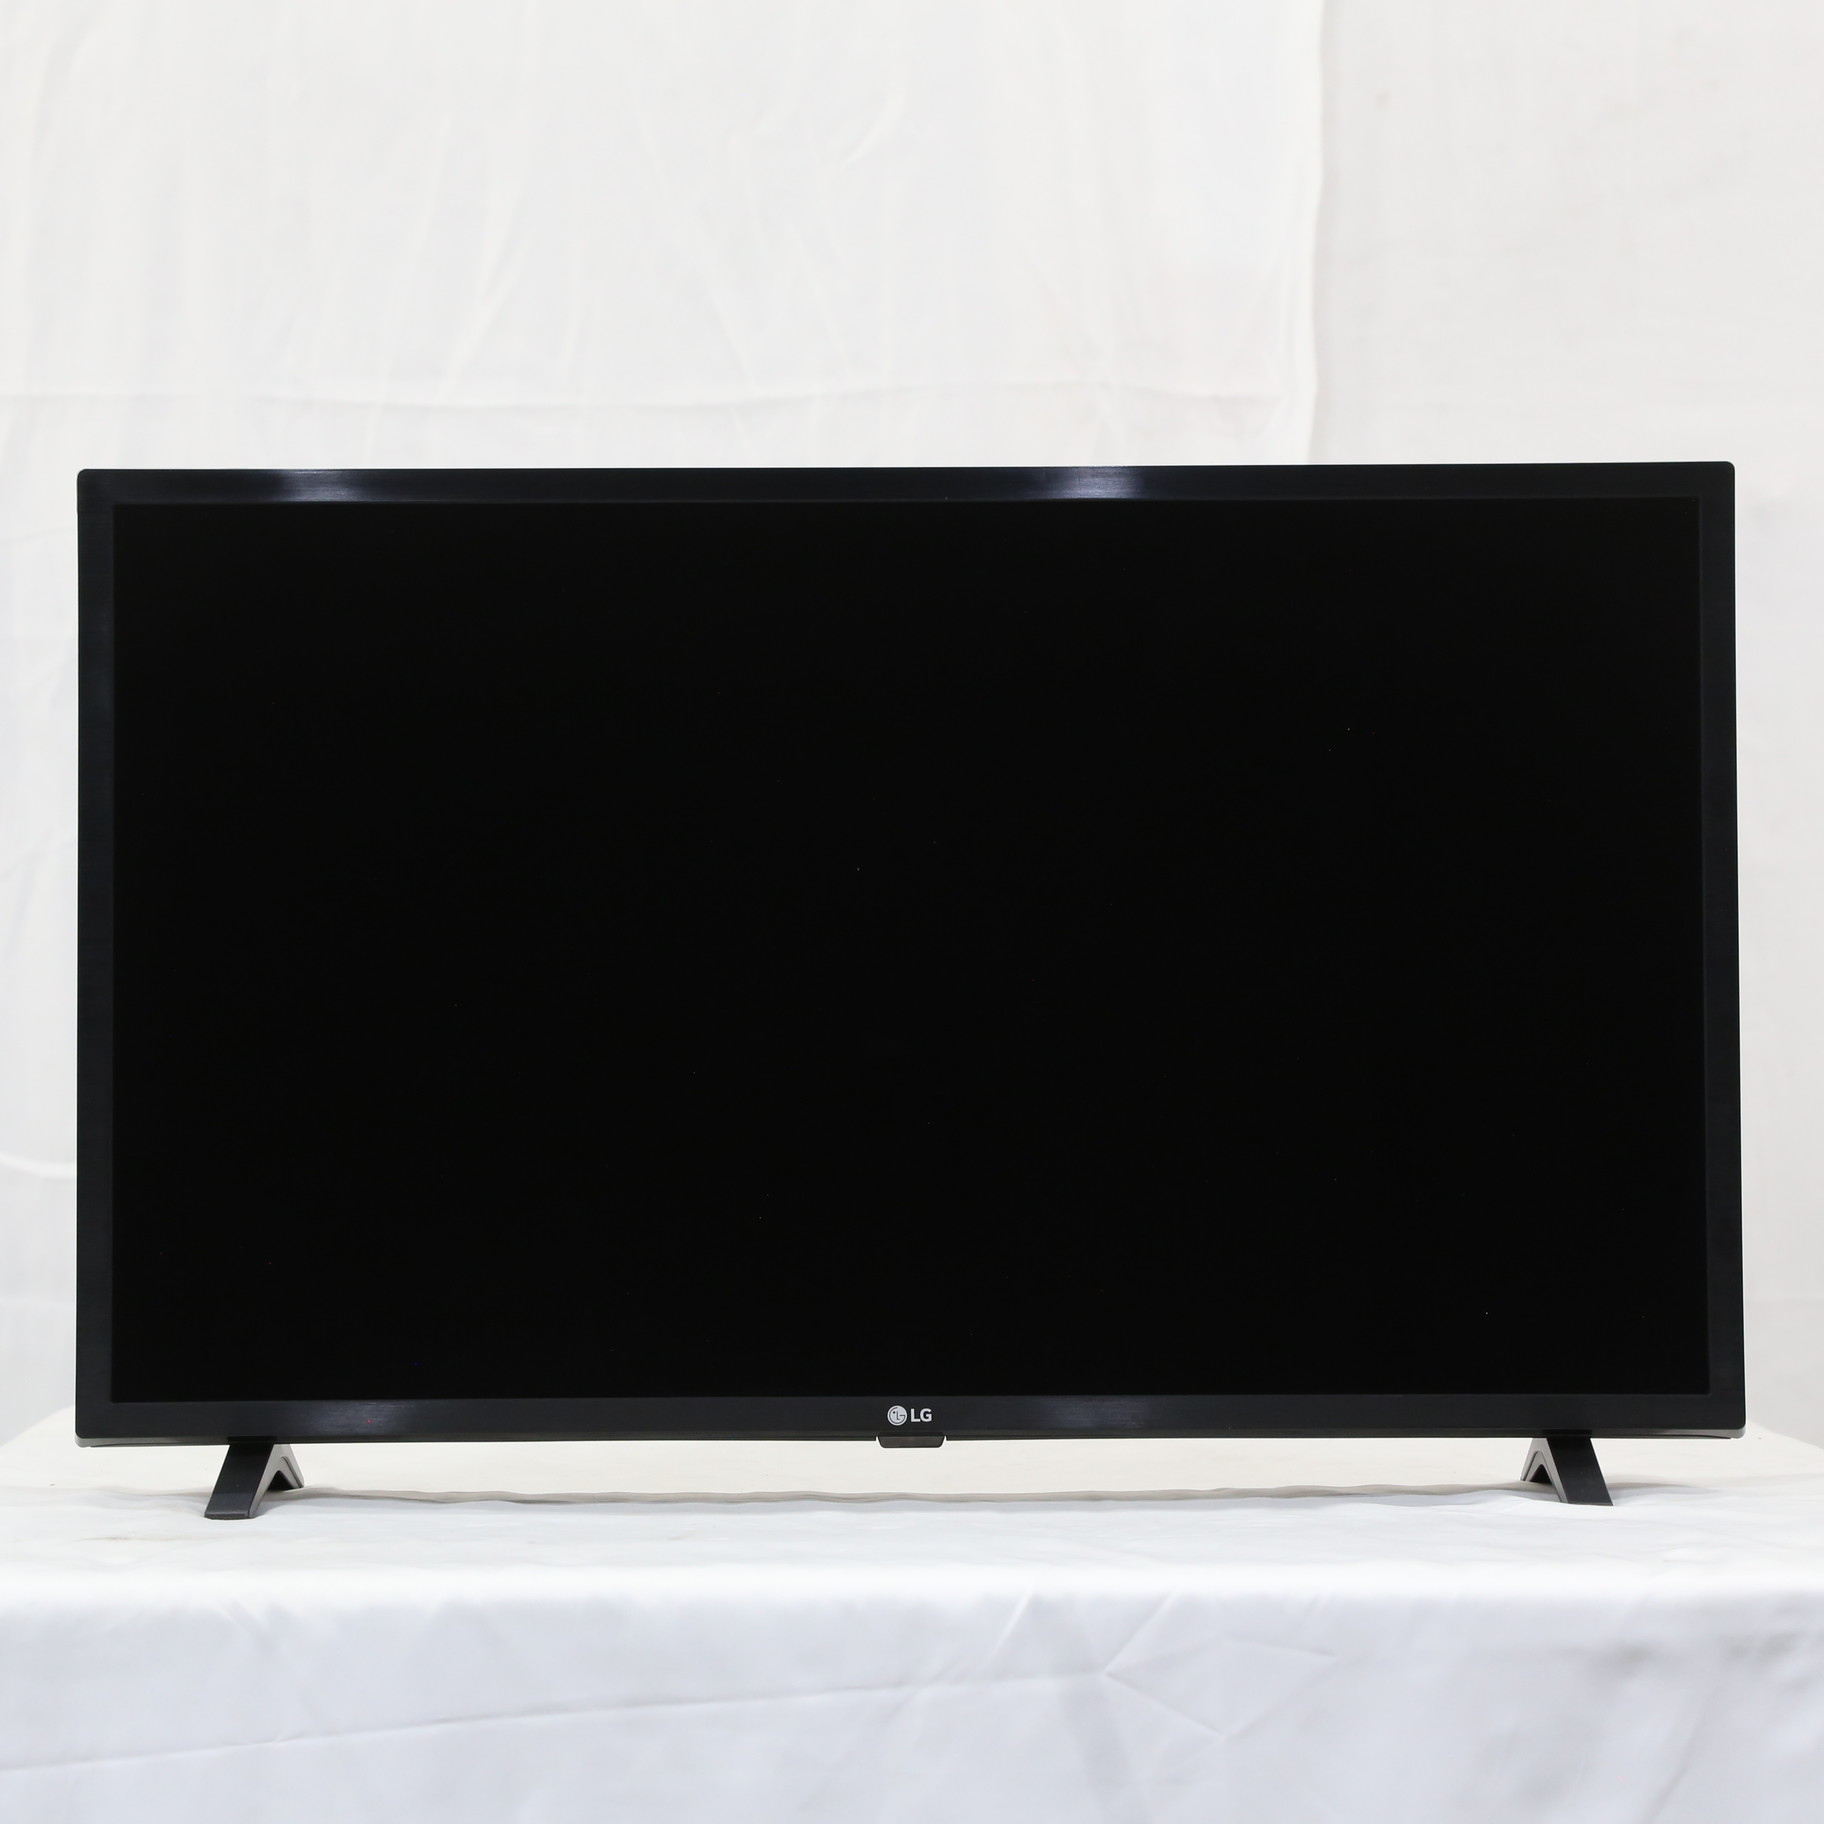 LG 32型TV 32LX6900PJA - テレビ/映像機器